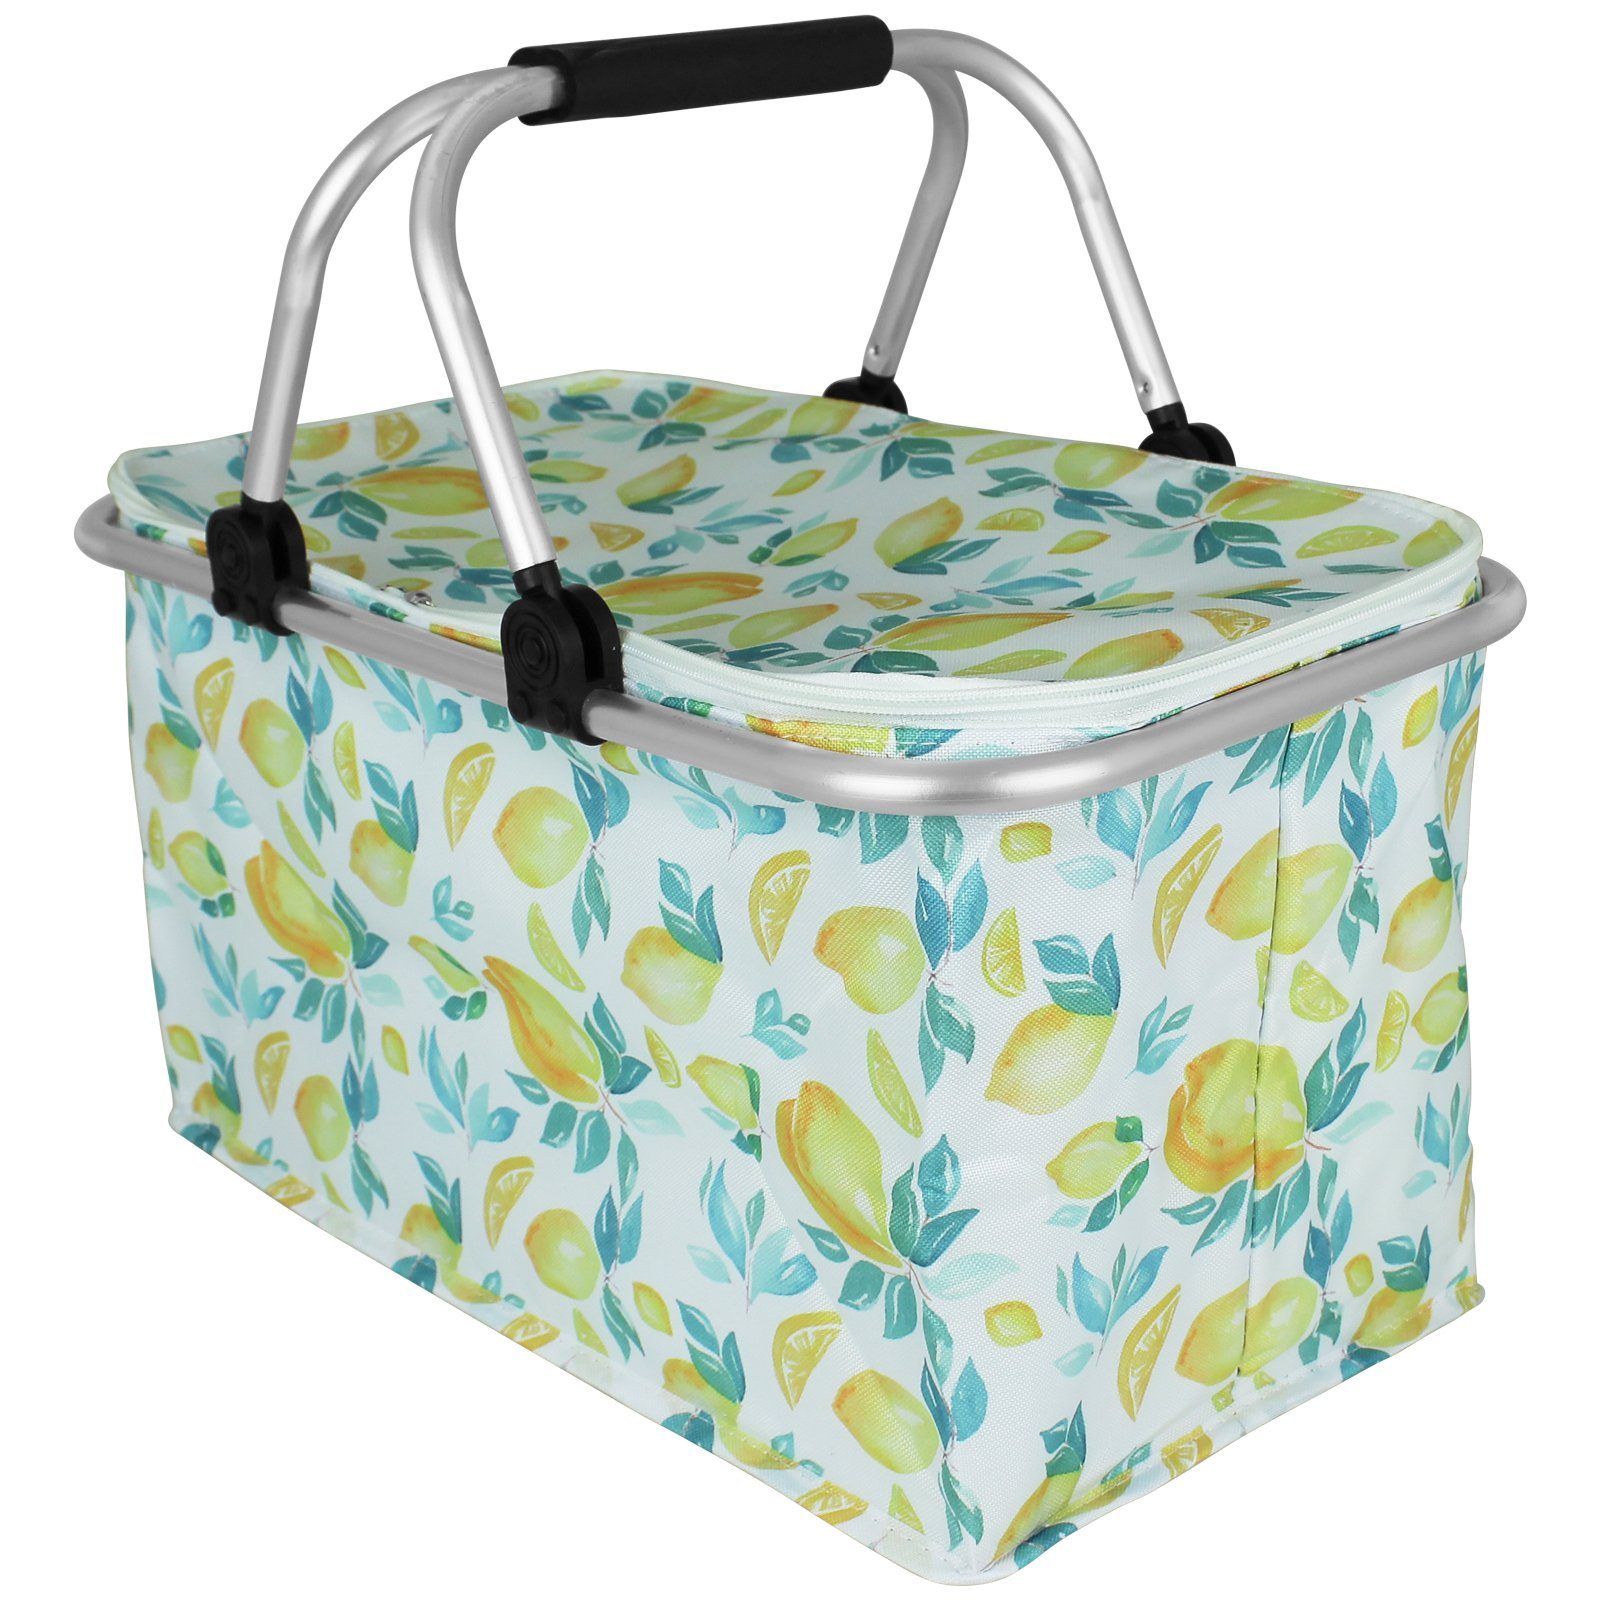 Einkaufskorb Kühltasche Koopman Thermobox Einkaufstasche Zitrone Kühlelement Strandkorb mit Coolbox Kühlbox Farbwahl,